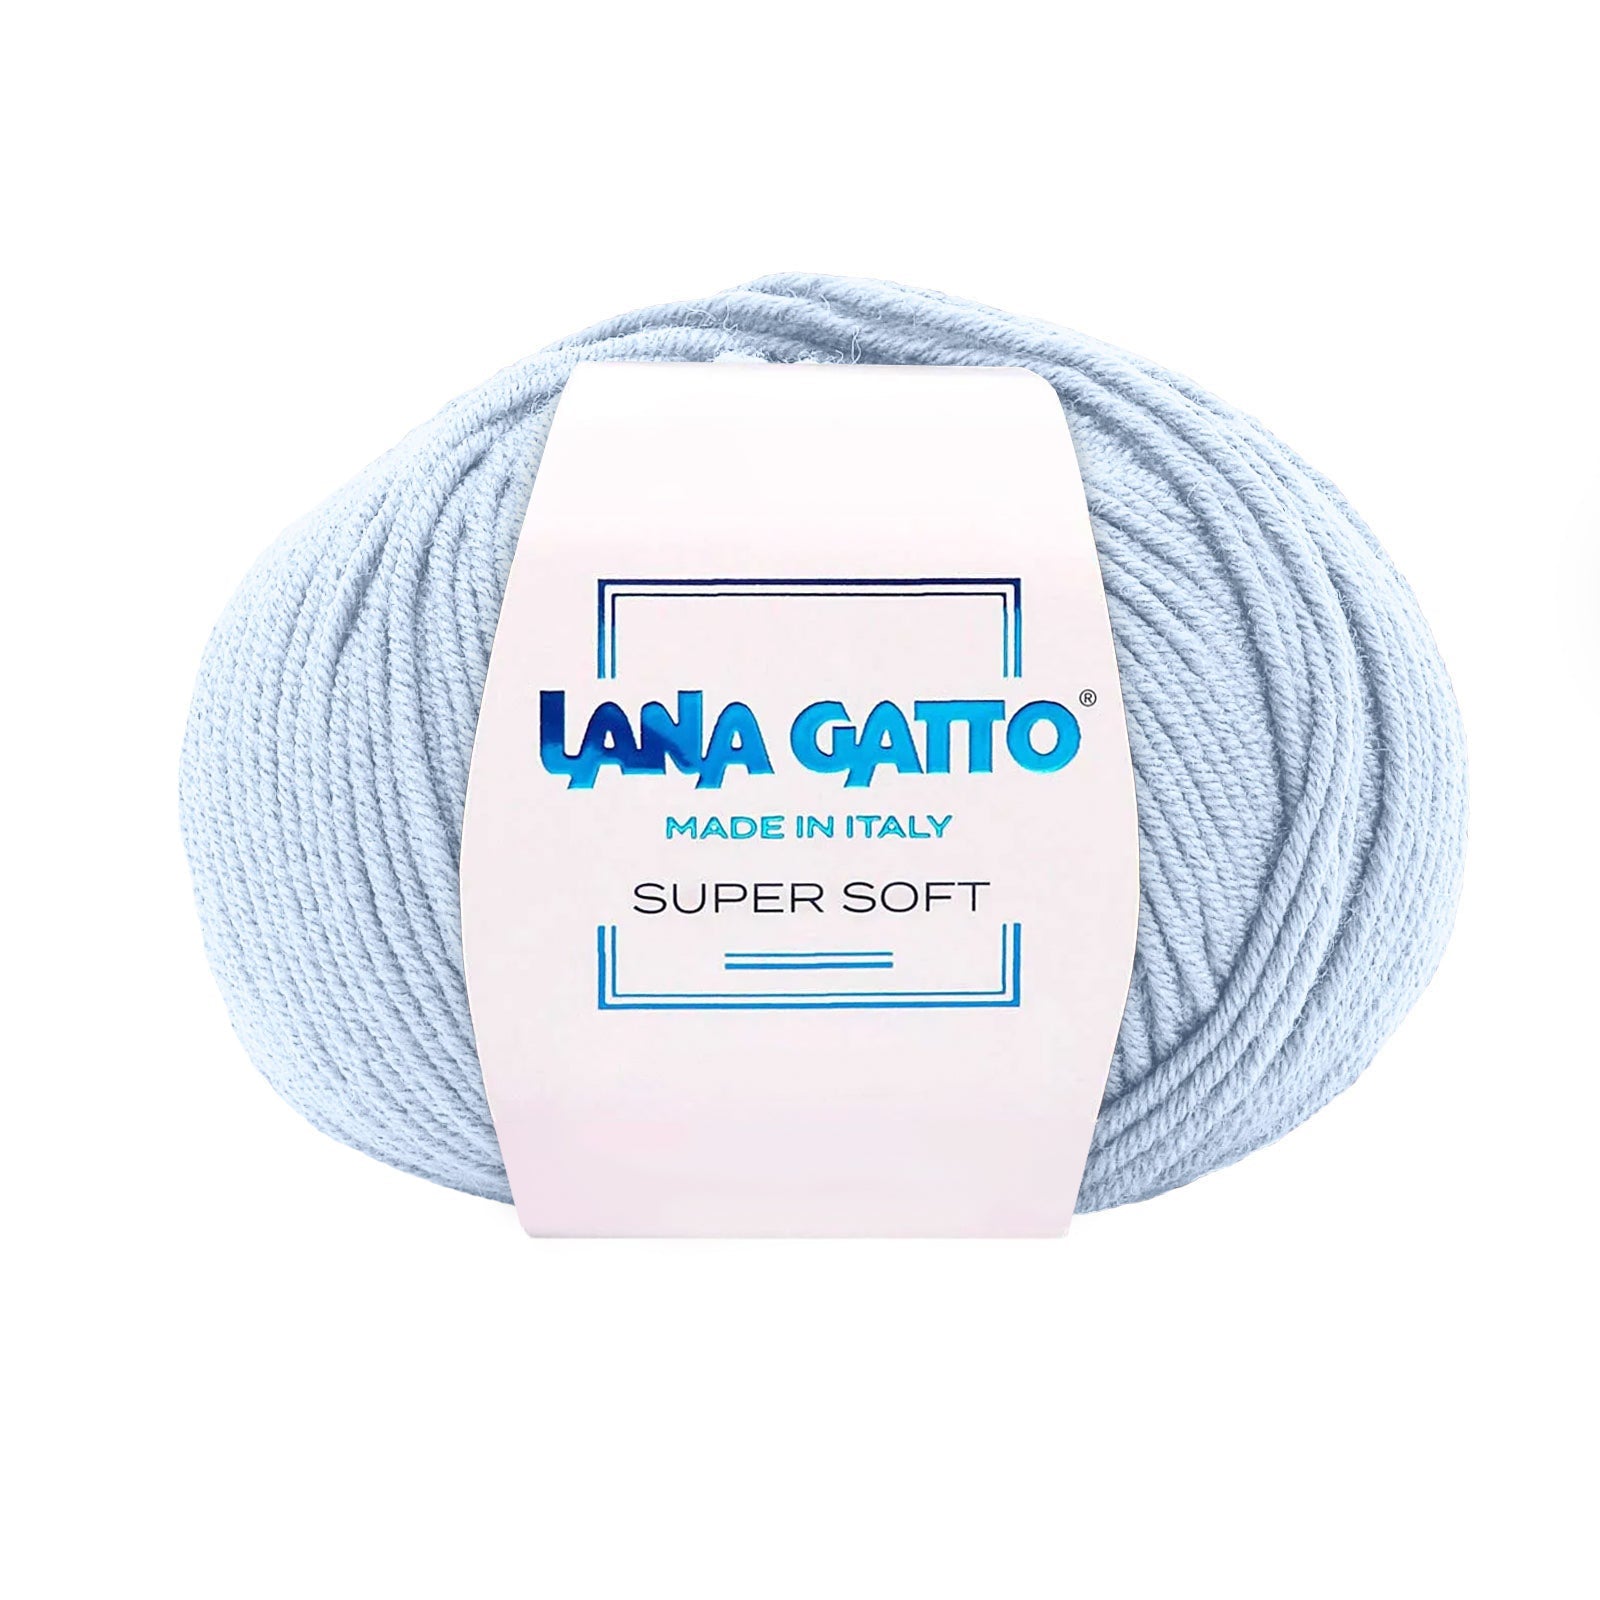 Gomitolo 100% Pura Lana Vergine Merino Extrafine Lana Gatto Linea Super Soft - Tonalità Blu - Azzurro - 14534 - Gomitolo